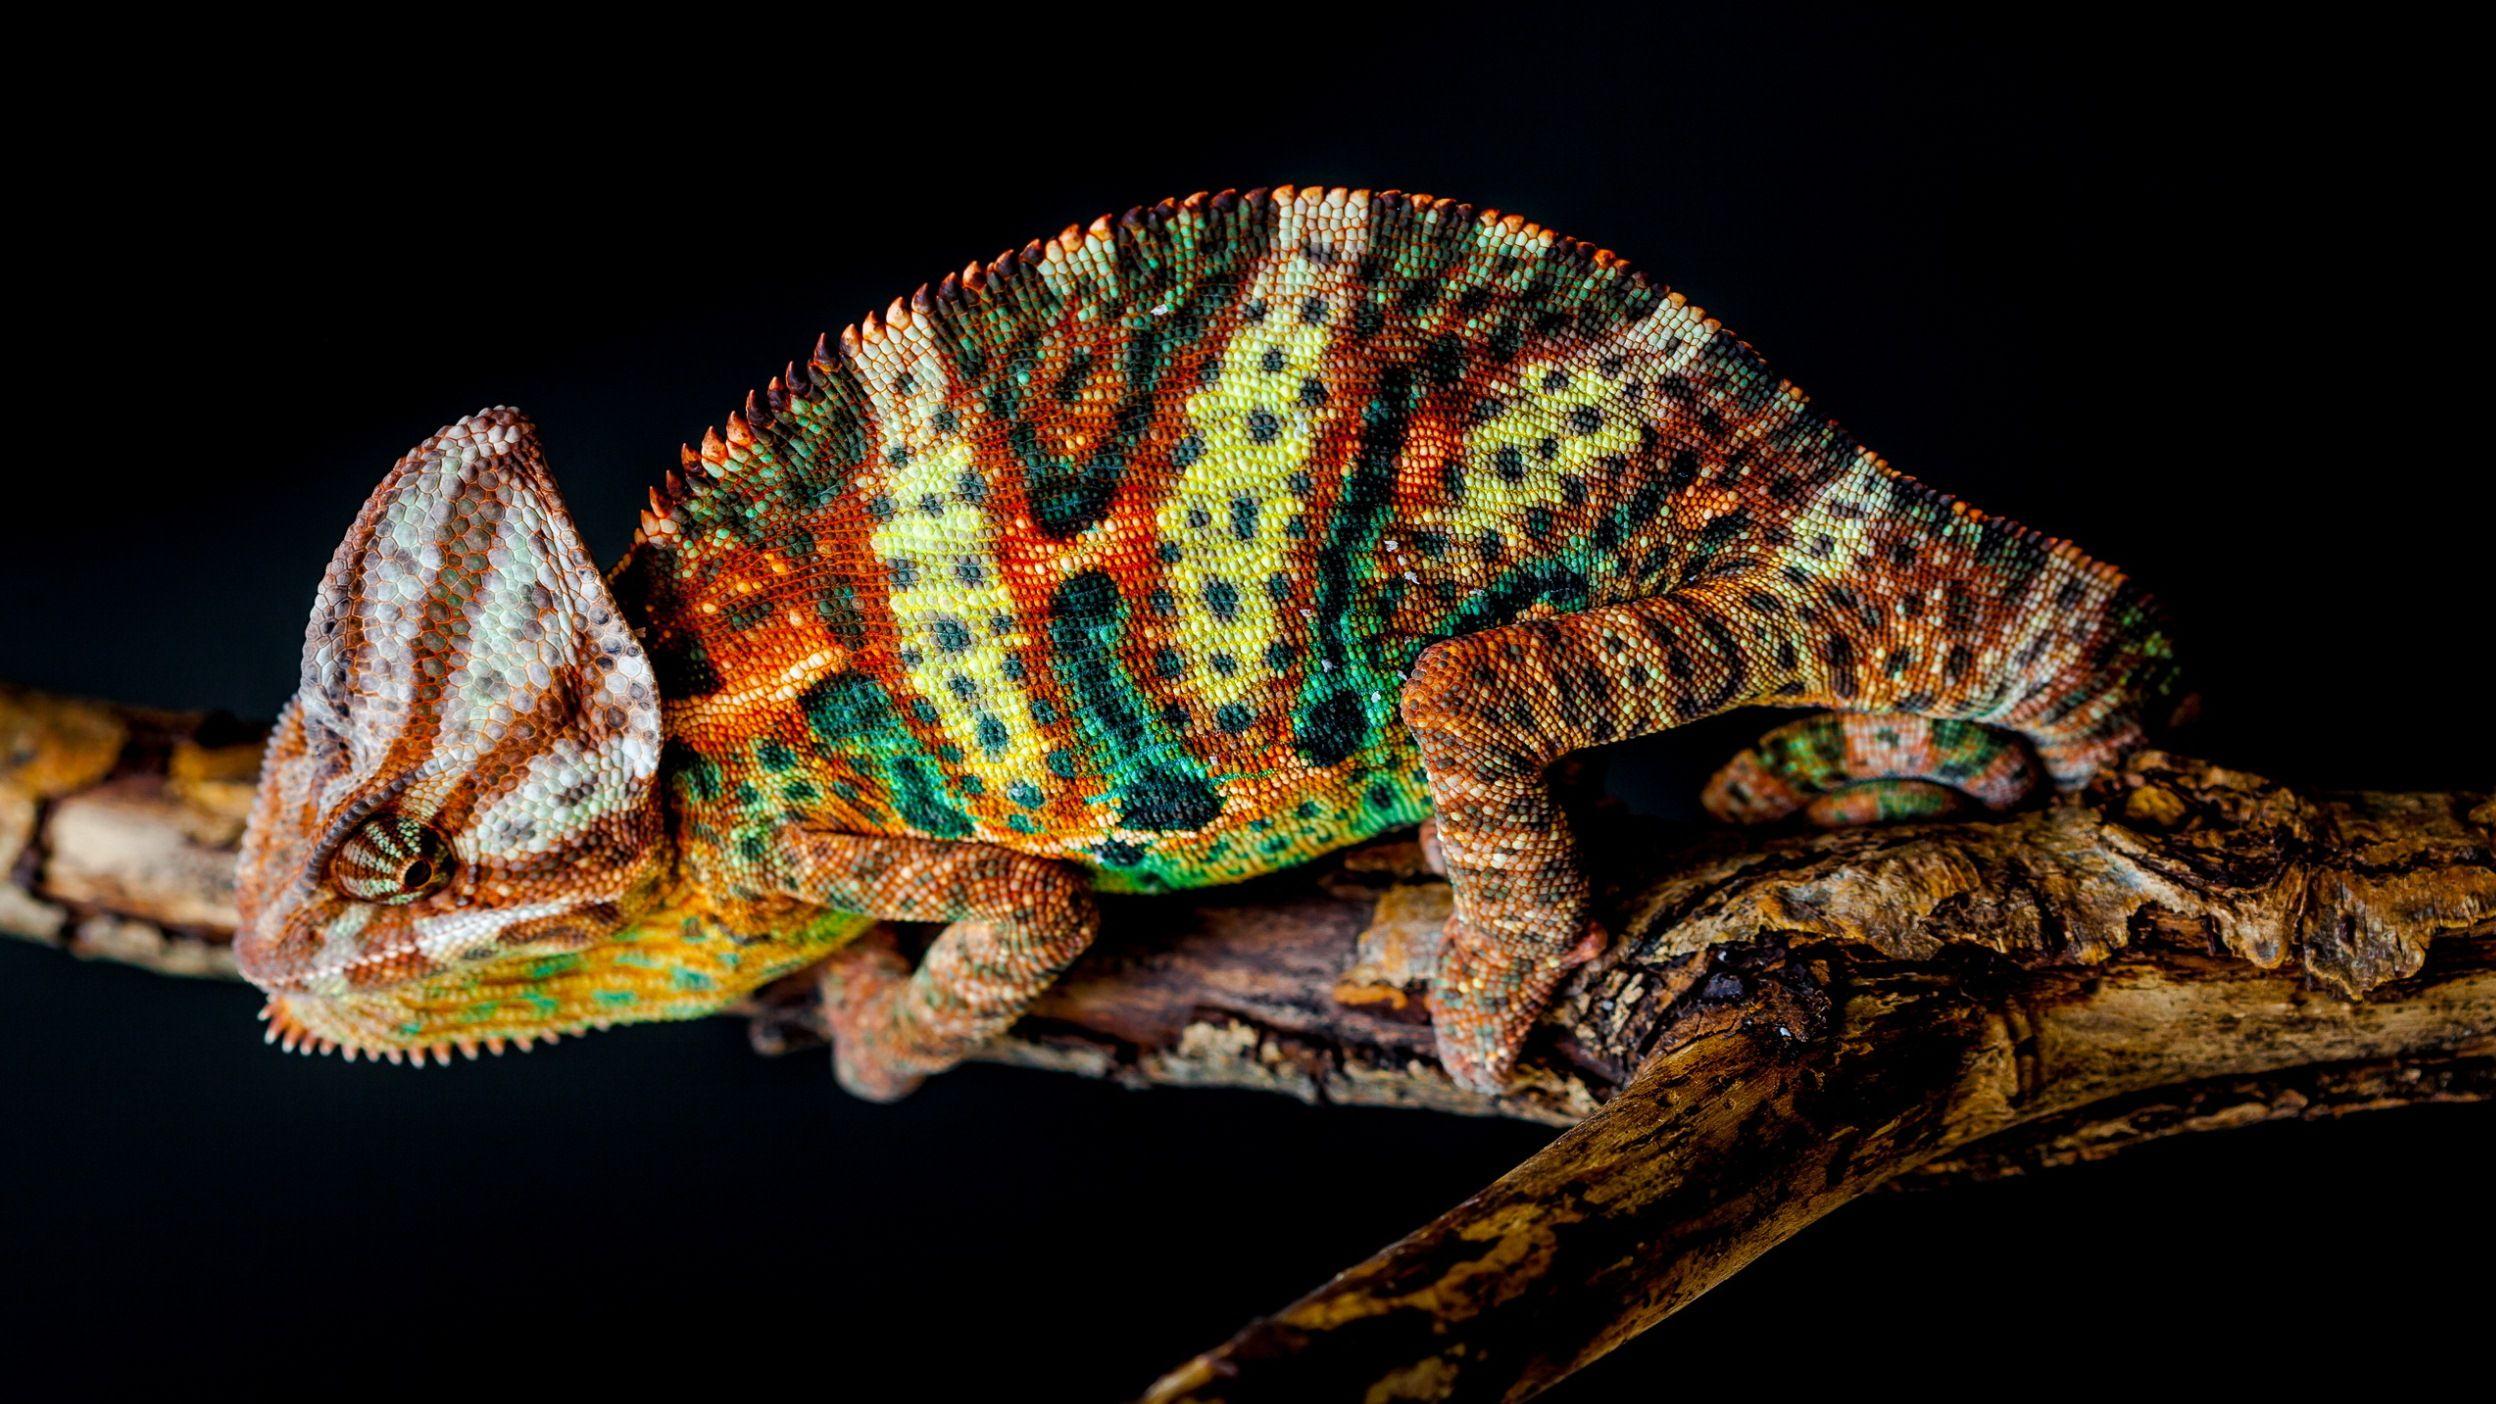 Veiled Chameleon. HD Lizard Wallpaper. Chameleon, Chameleon